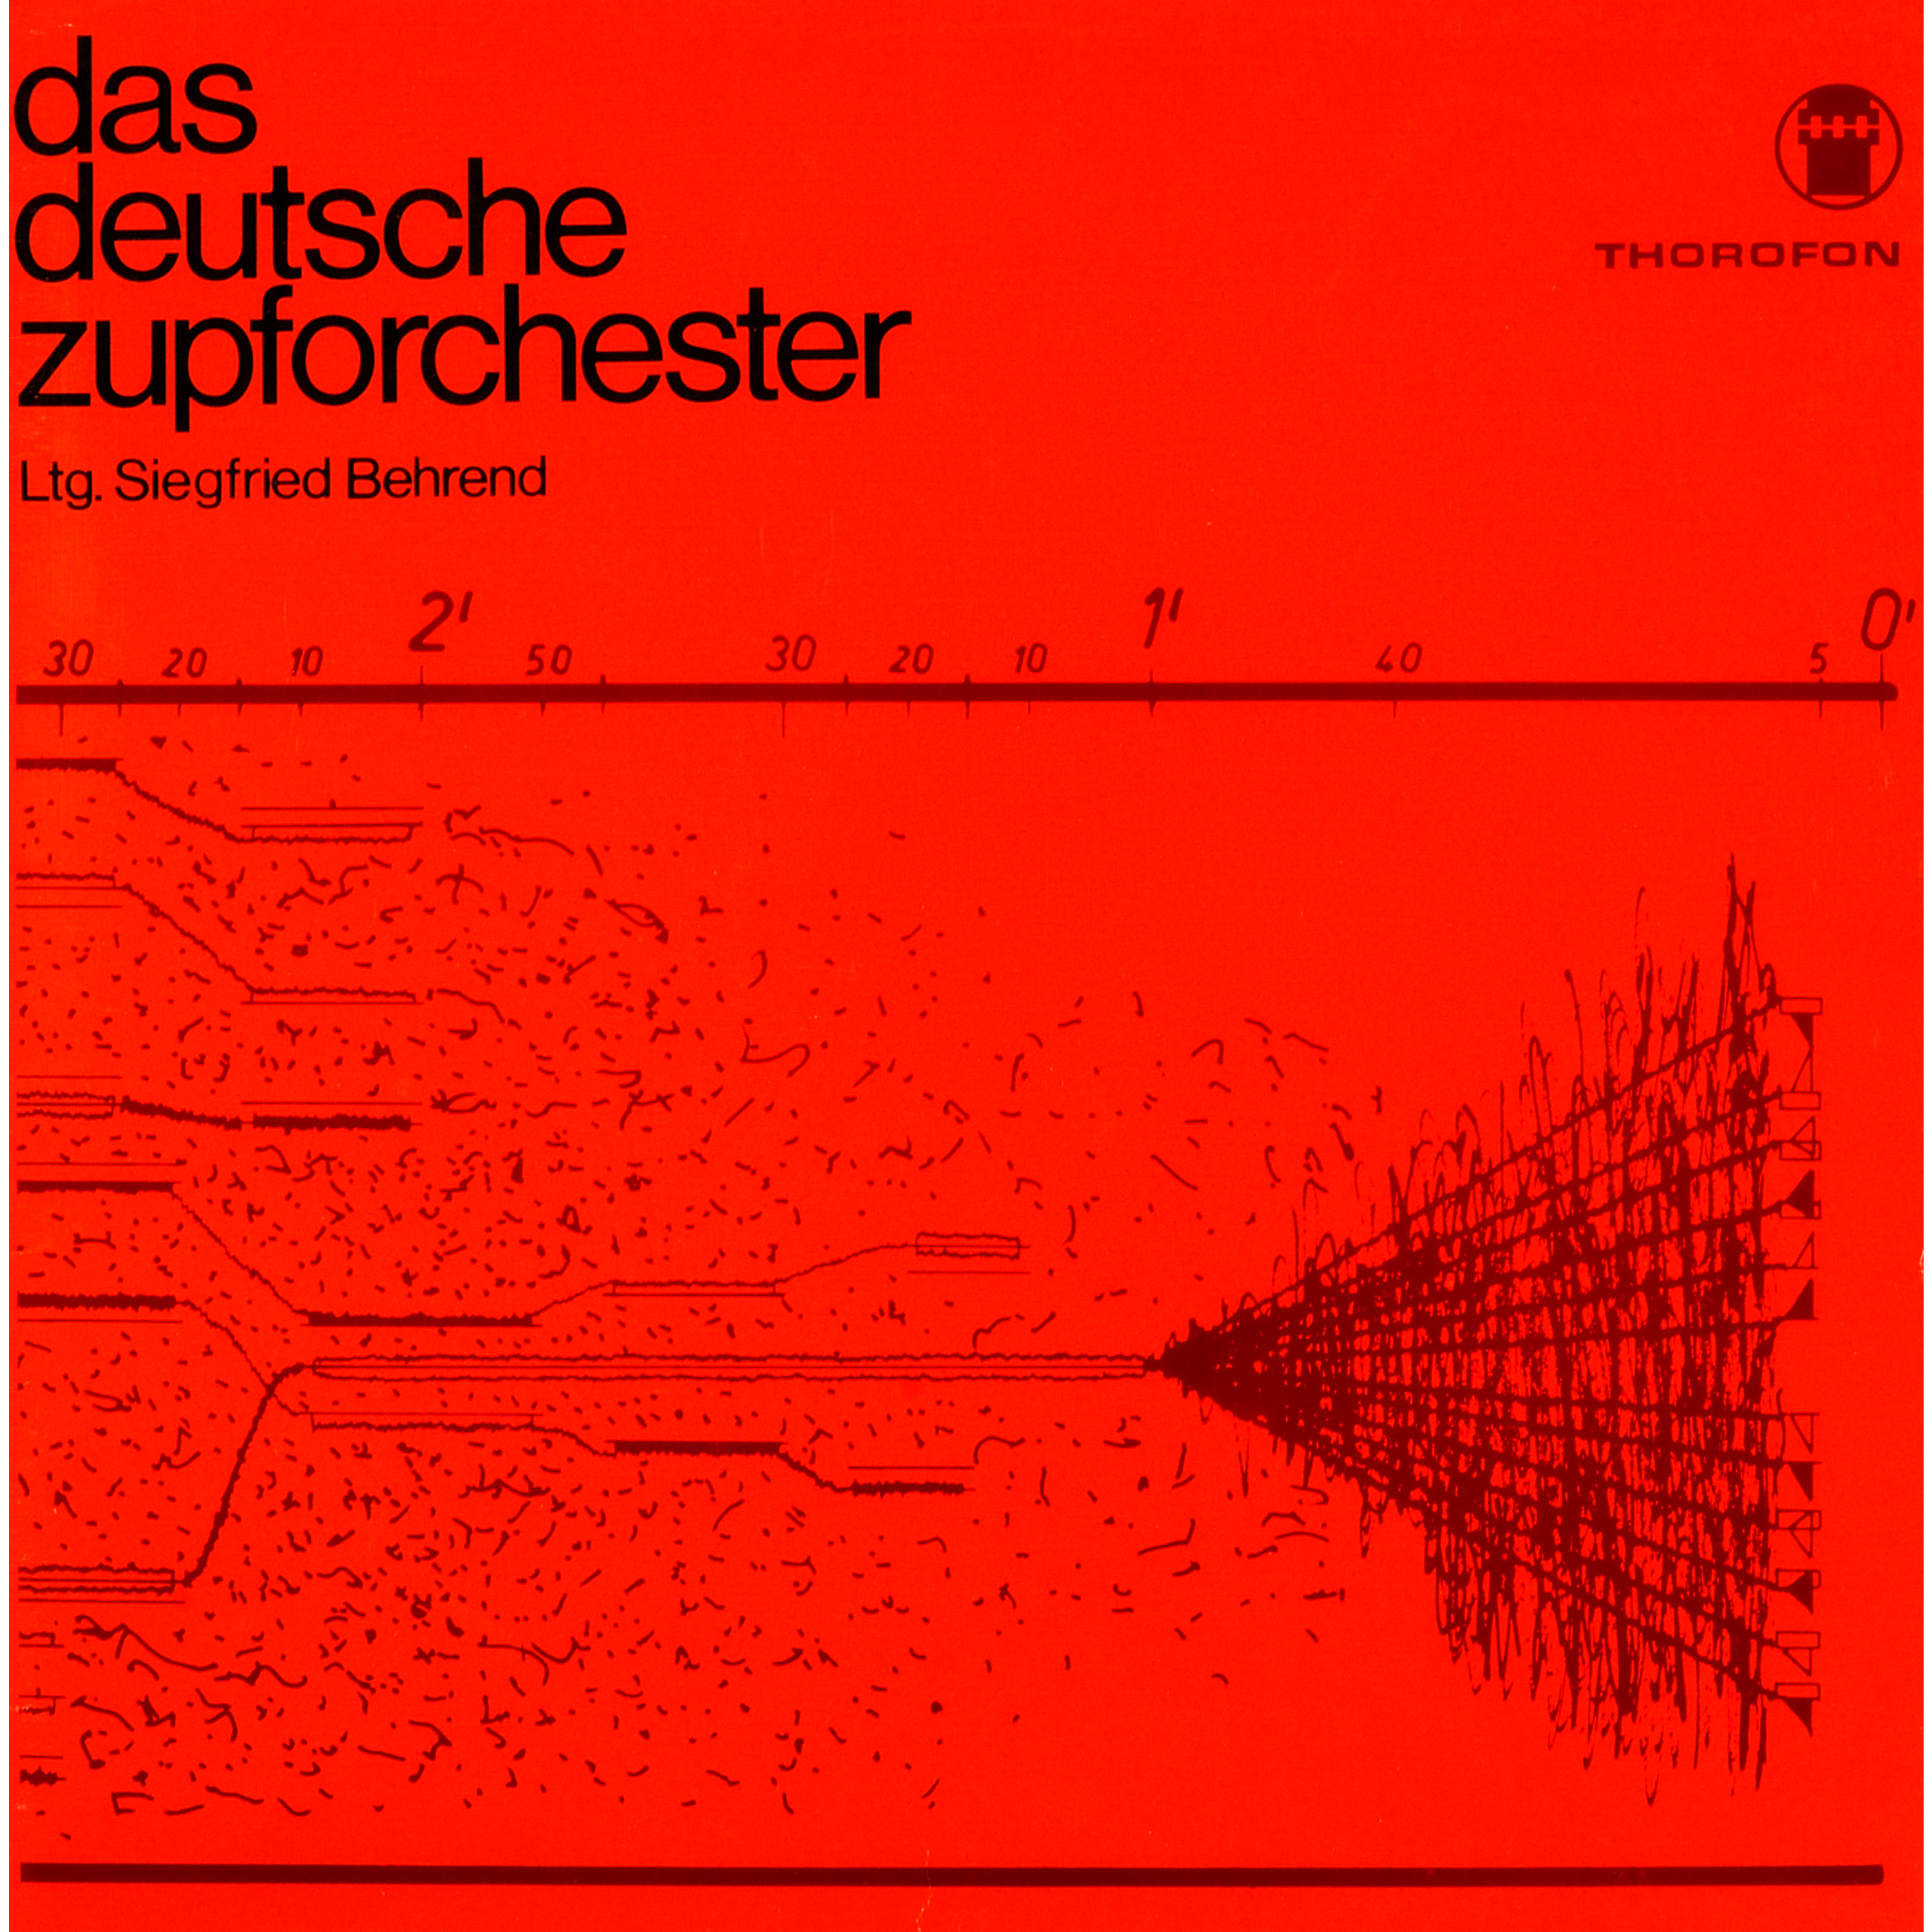 Das deutsche Zupforchester